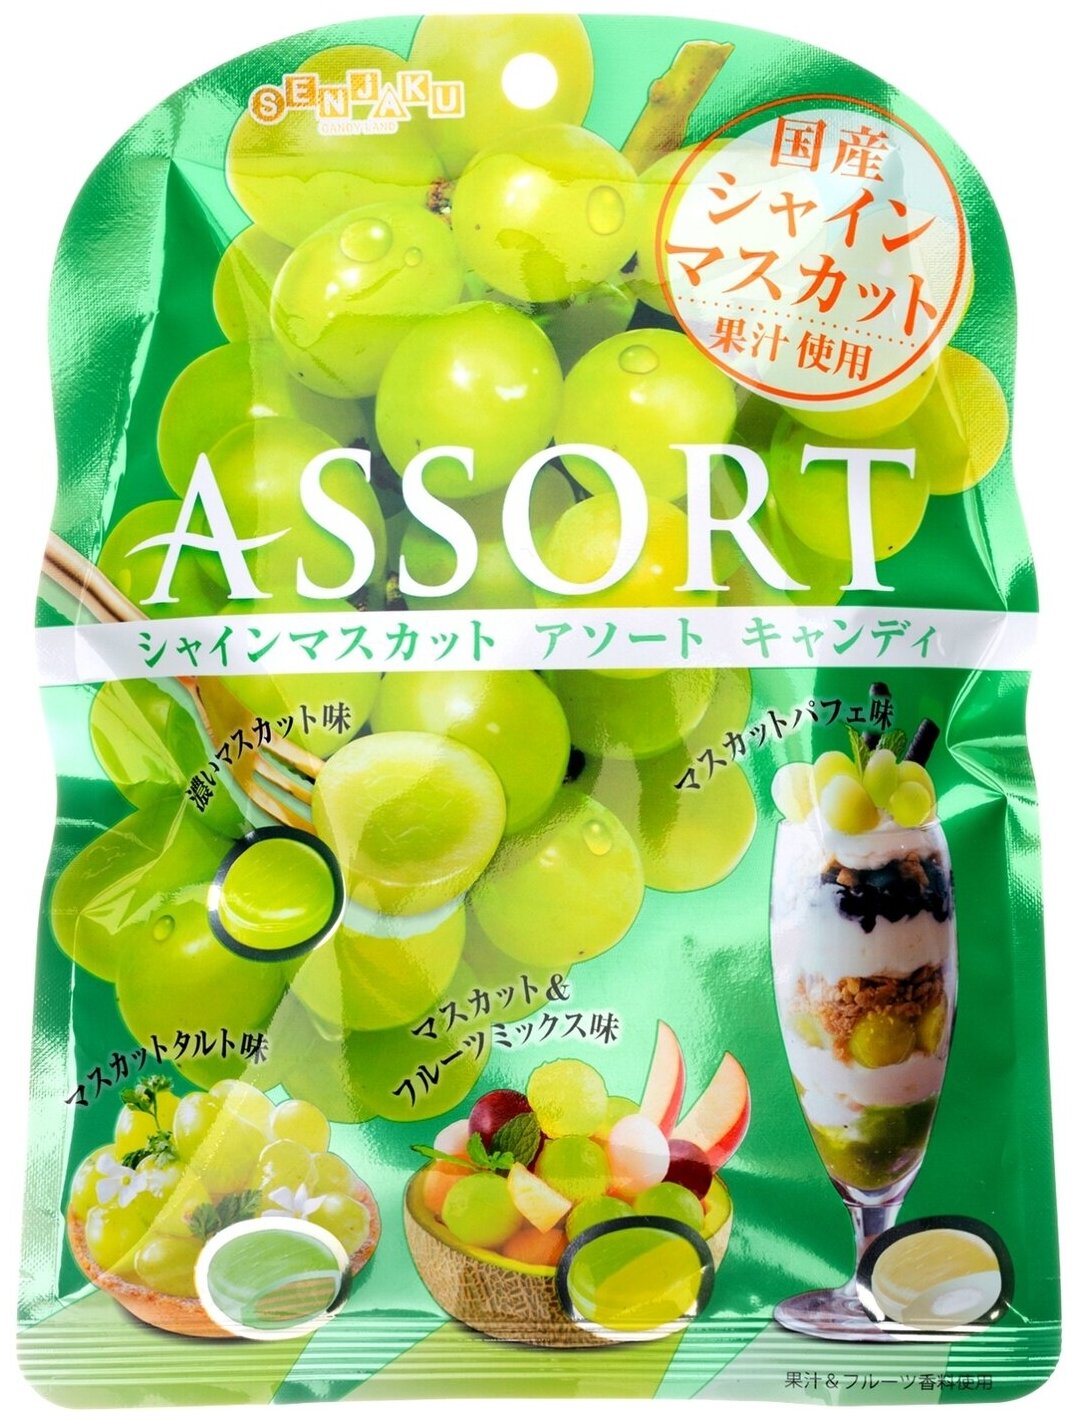 Японские леденцы "Ассорти 4 вкуса: яркий виноградный, мускатный терпкий, виноградно-фруктовый микс и вкус виноградного парфе, Senjaku, Япония